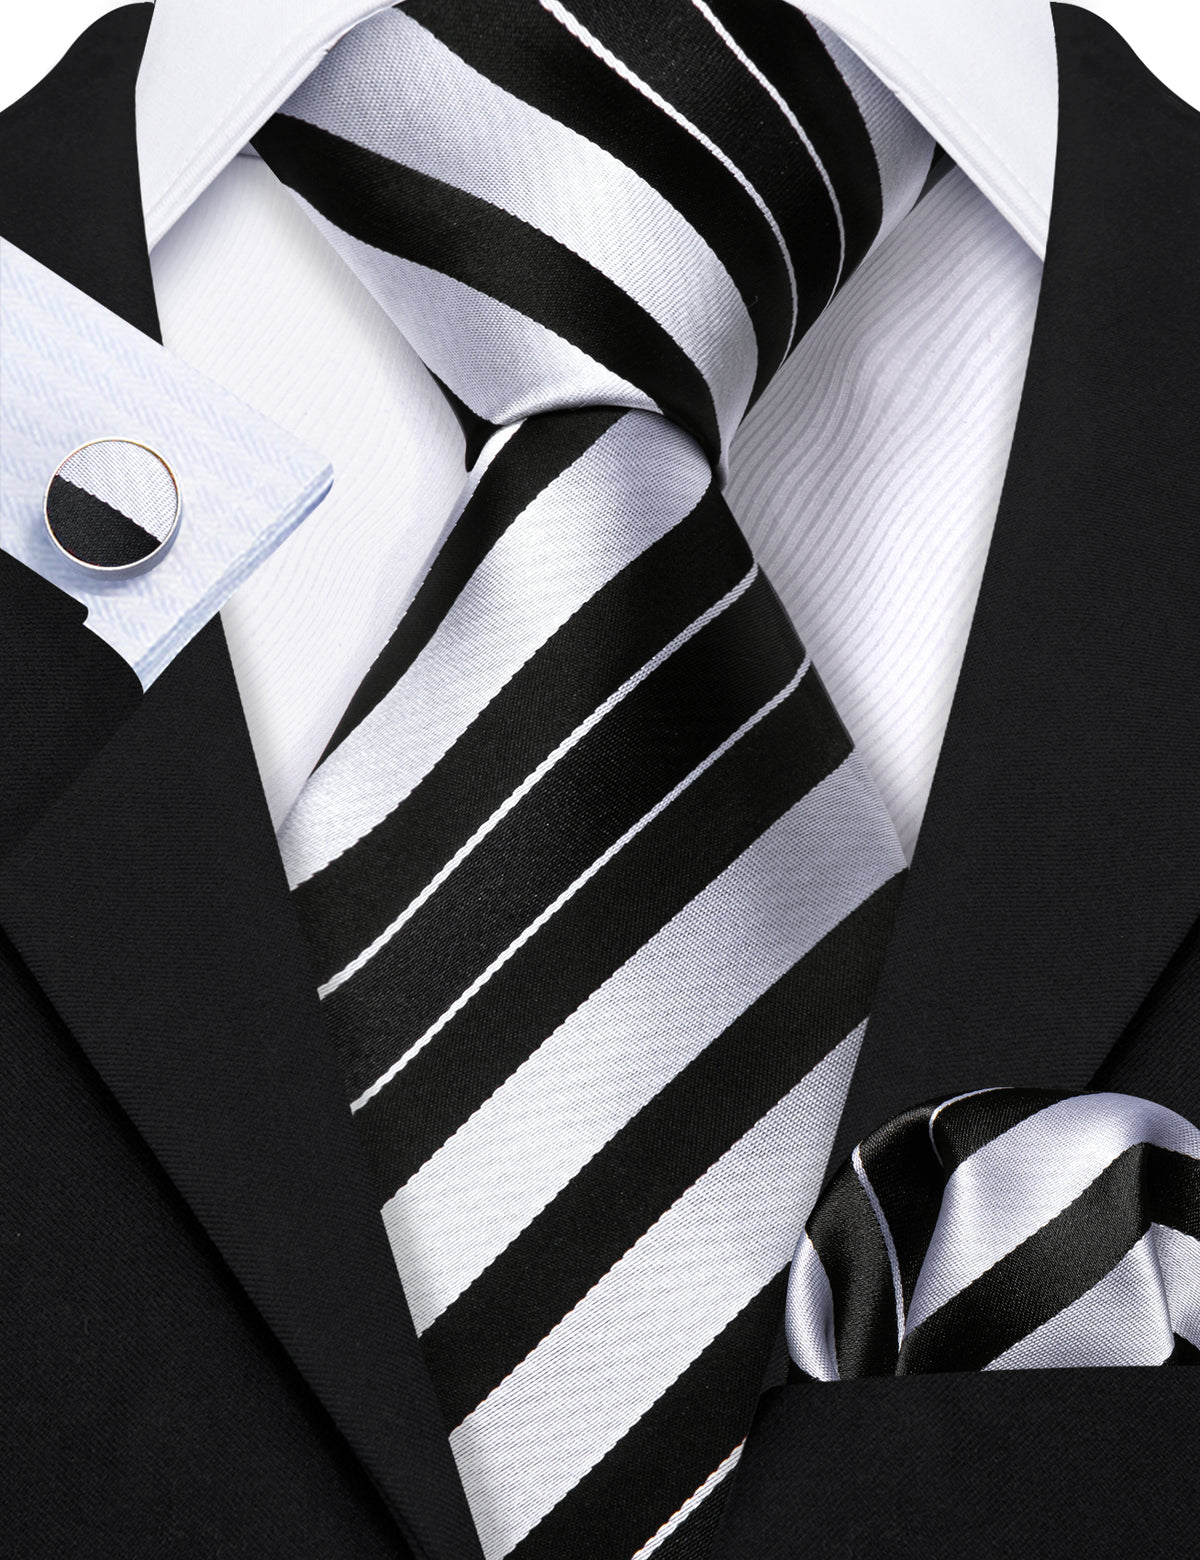 Men’s Silk Coordinated Tie Set - Black White Striped (5218)